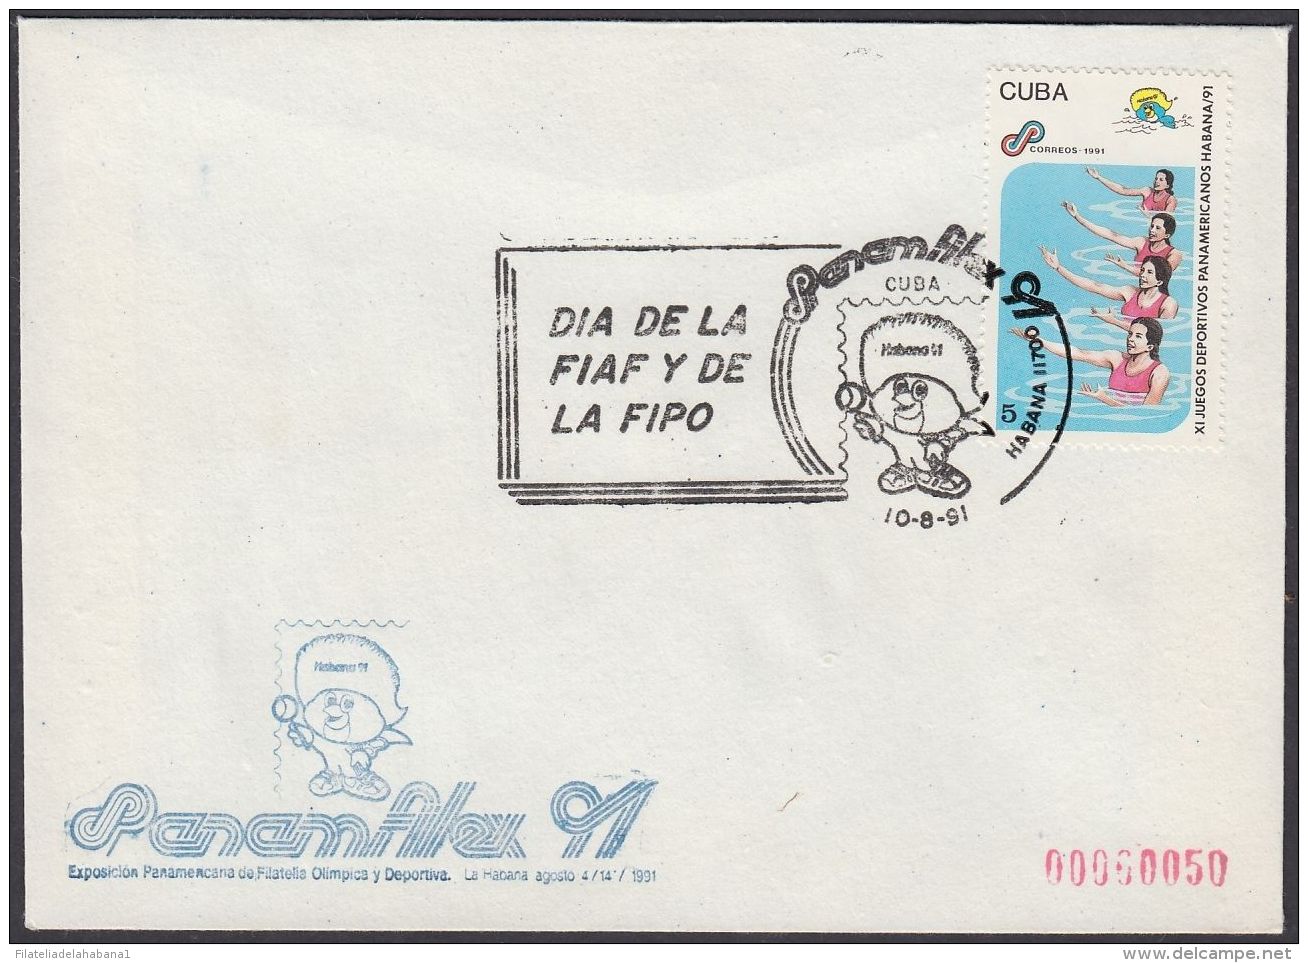 1991-CE-41 CUBA 1991 SPECIAL CANCEL. PANAMFILEX EXPO. DIA DE LA FIAF Y LA FIPO. - Covers & Documents